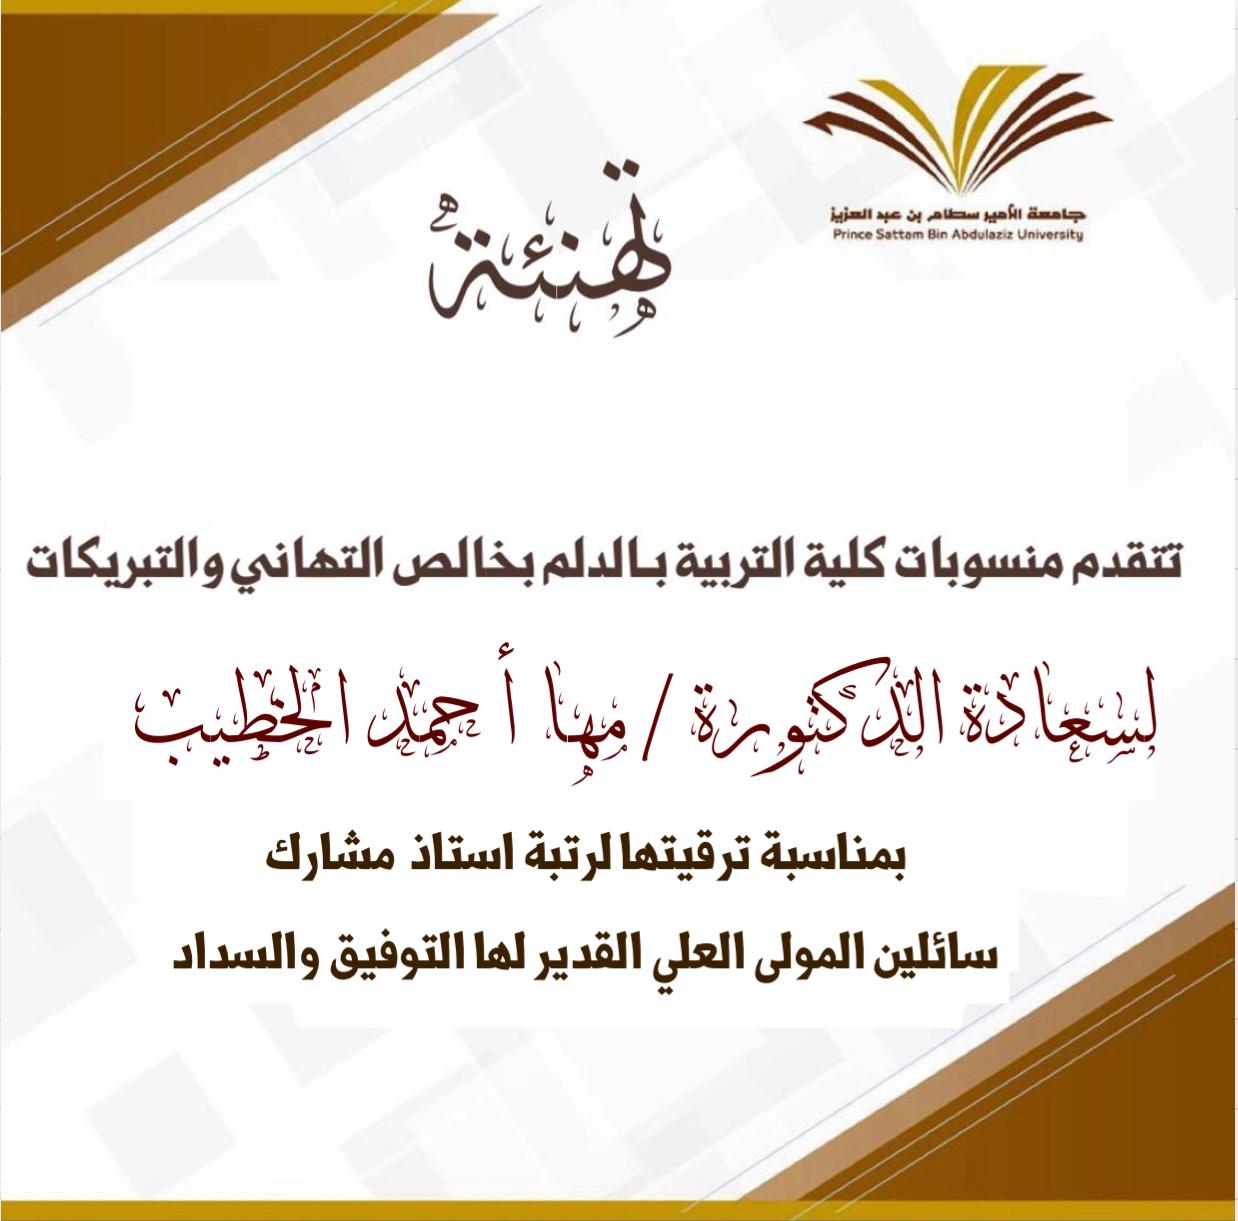 Congratulations to Dr. Maha Ahmed Hussein Al-Khatib